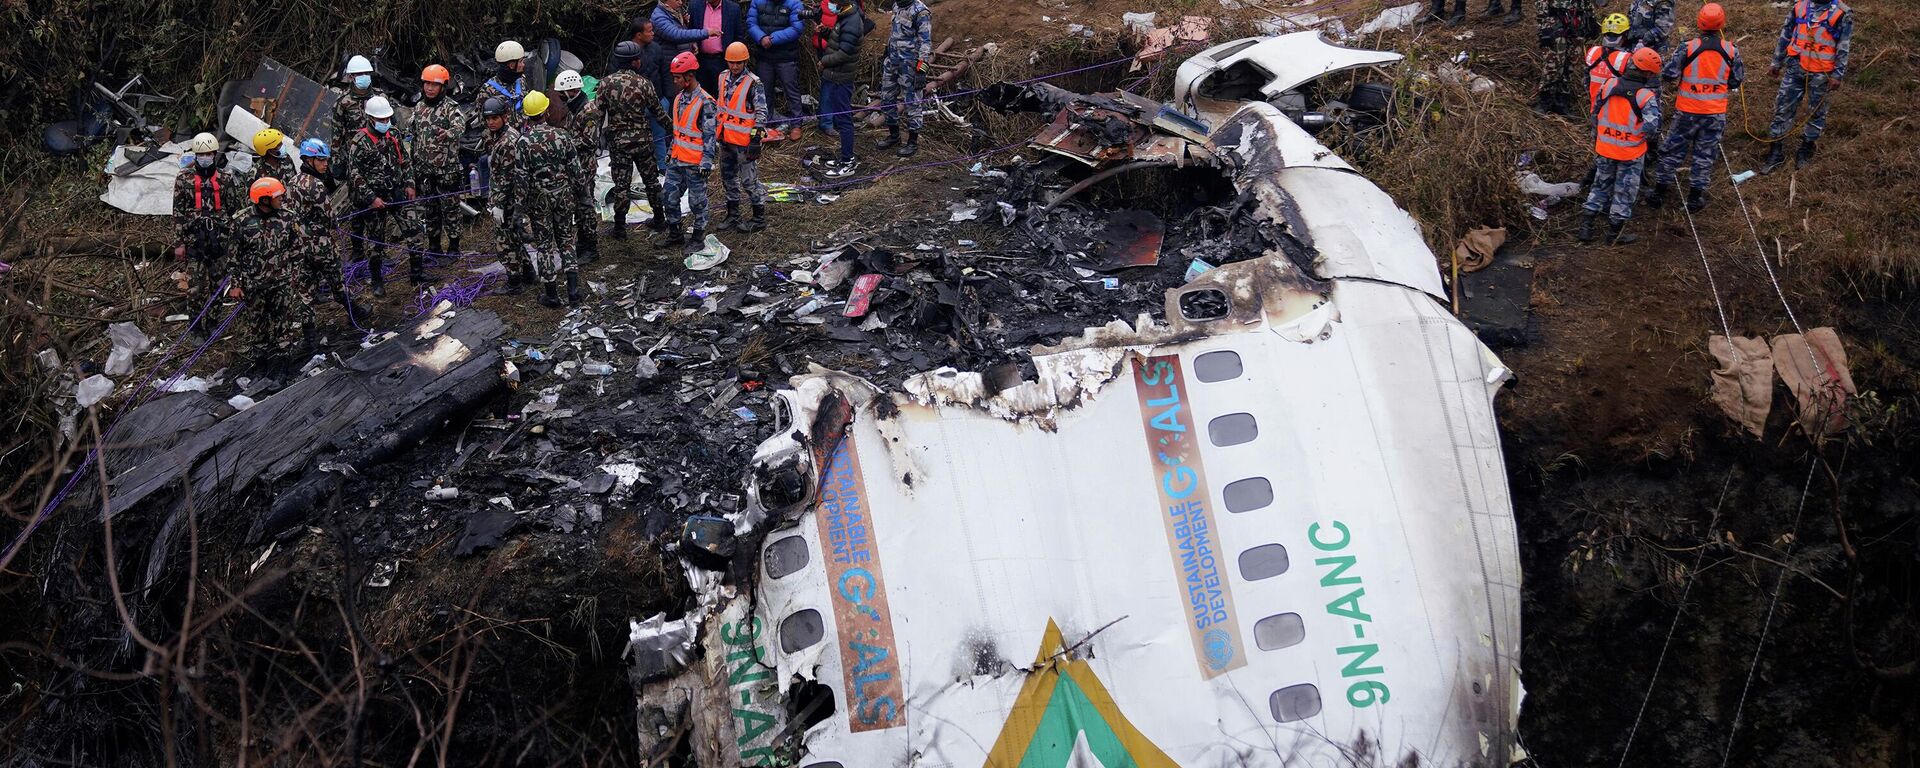 Пассажирский самолет с 72 людьми на борту разбился недалеко от международного аэропорта Покхара в Непале, 15 января 2022 г. - Sputnik Казахстан, 1920, 15.01.2023